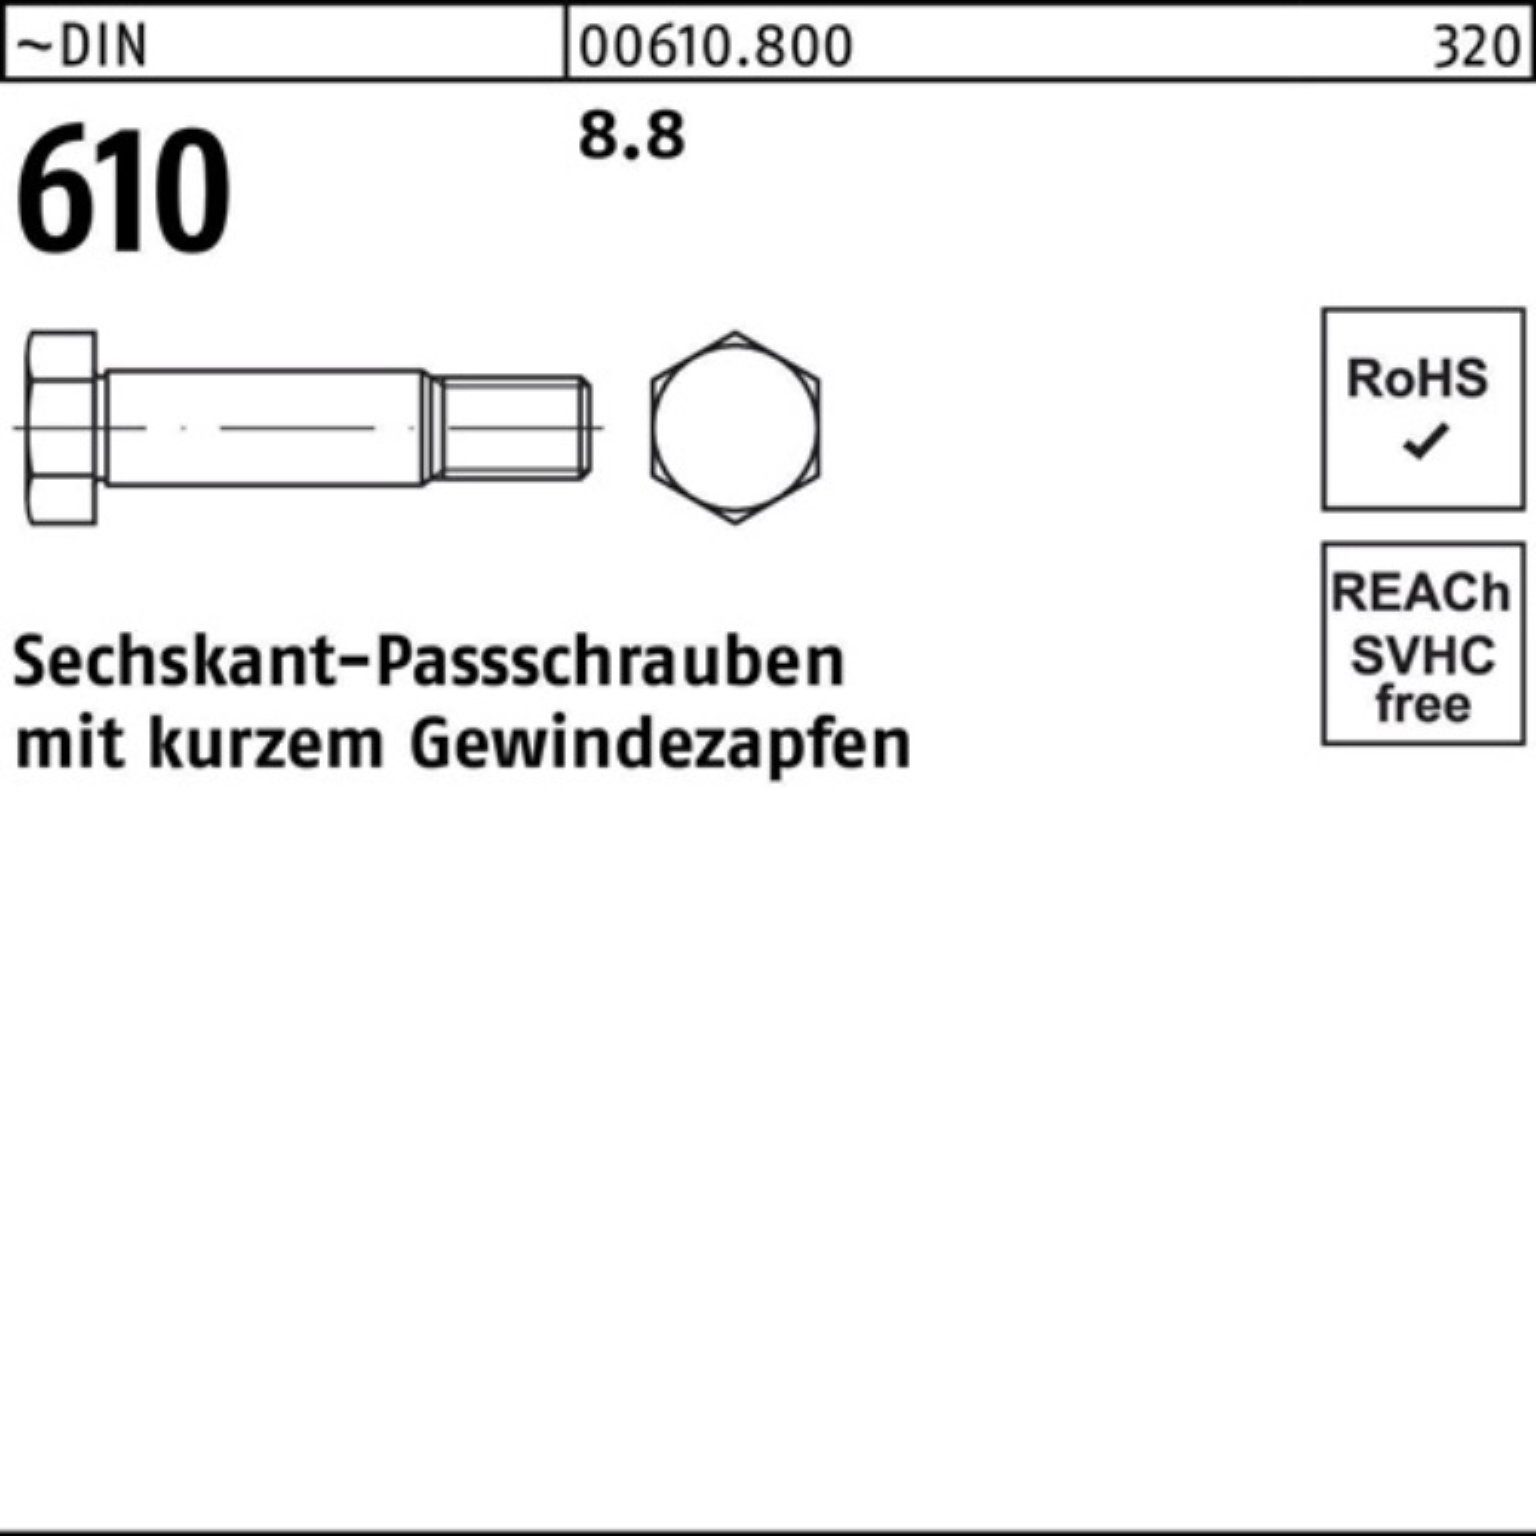 Reyher Schraube 100er DIN 40 Sechskantpassschraube Gewindezapfen 610 kurzem M12x Pack